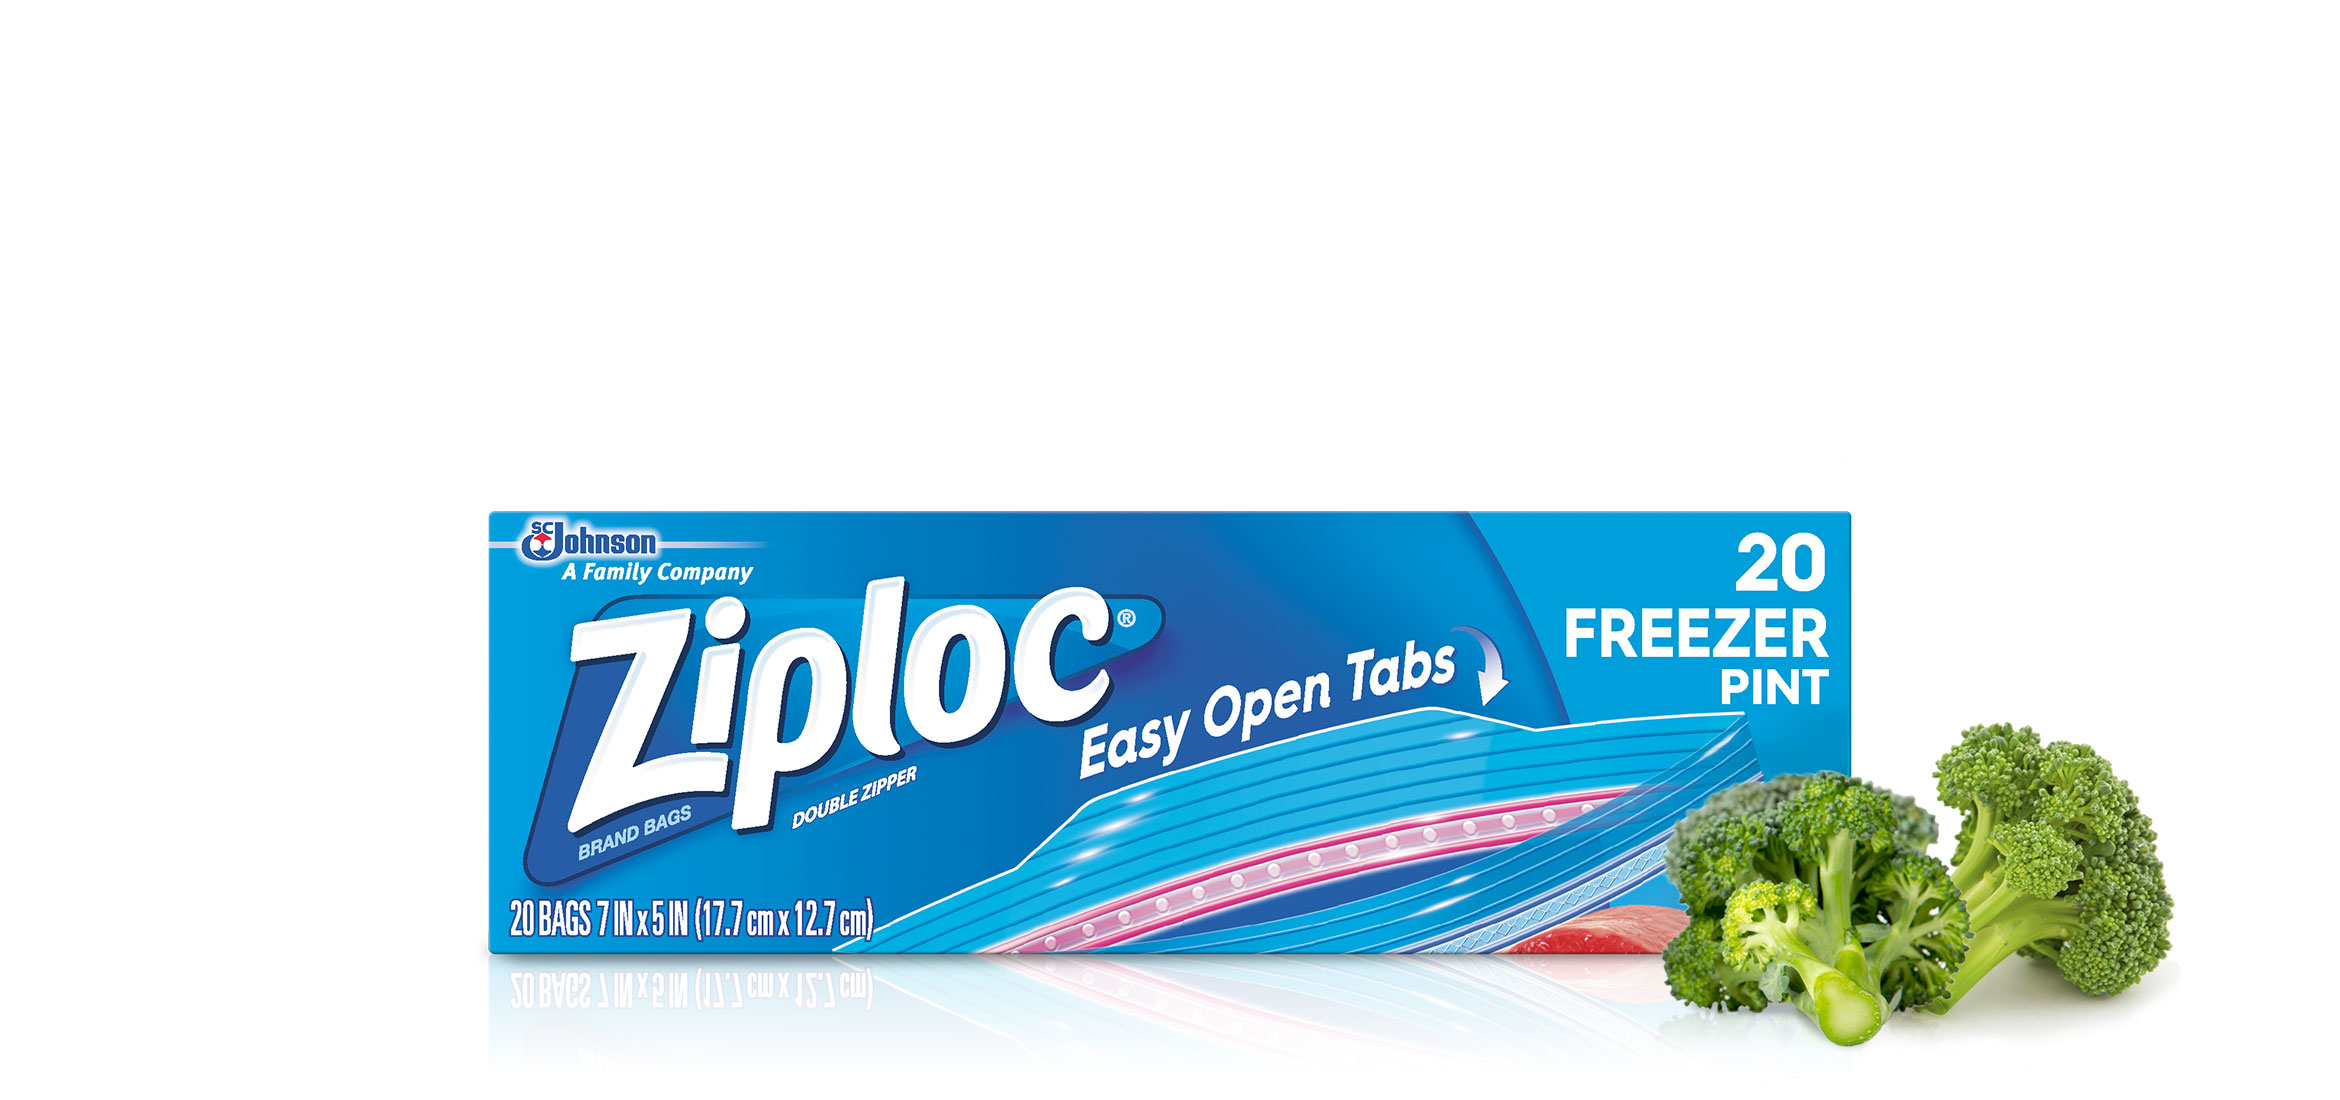 Ziploc Freezer Pint 20 Count